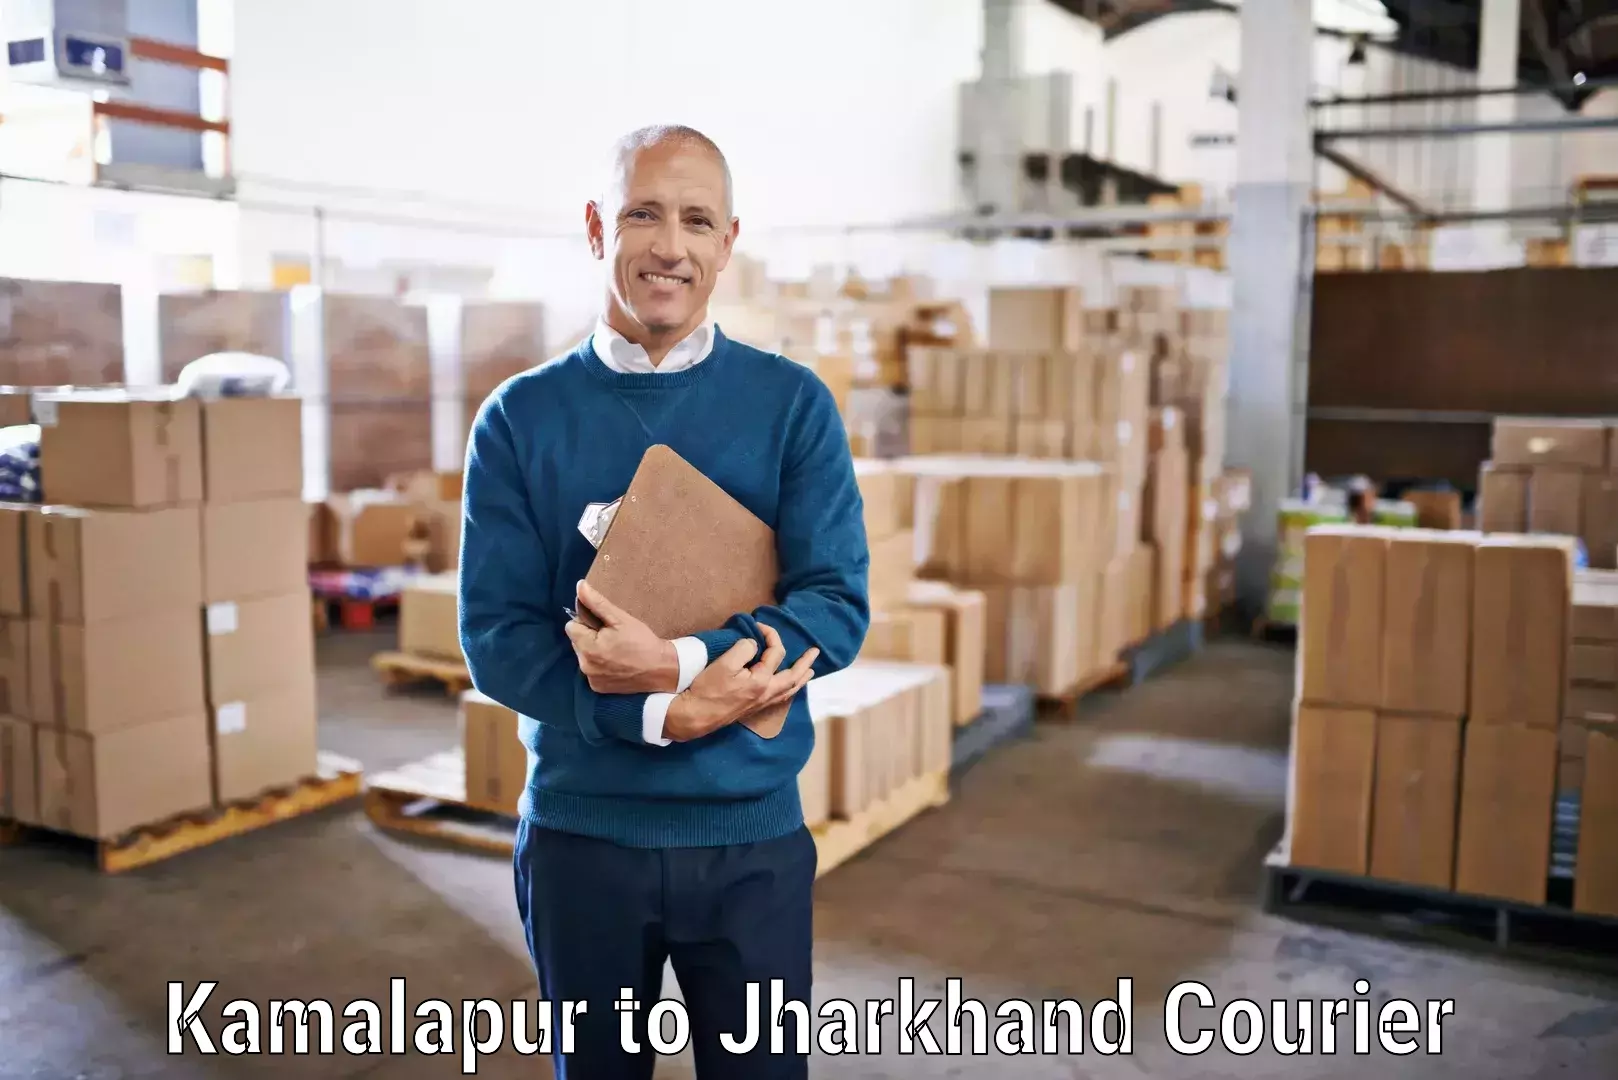 Reliable delivery network Kamalapur to Musabani